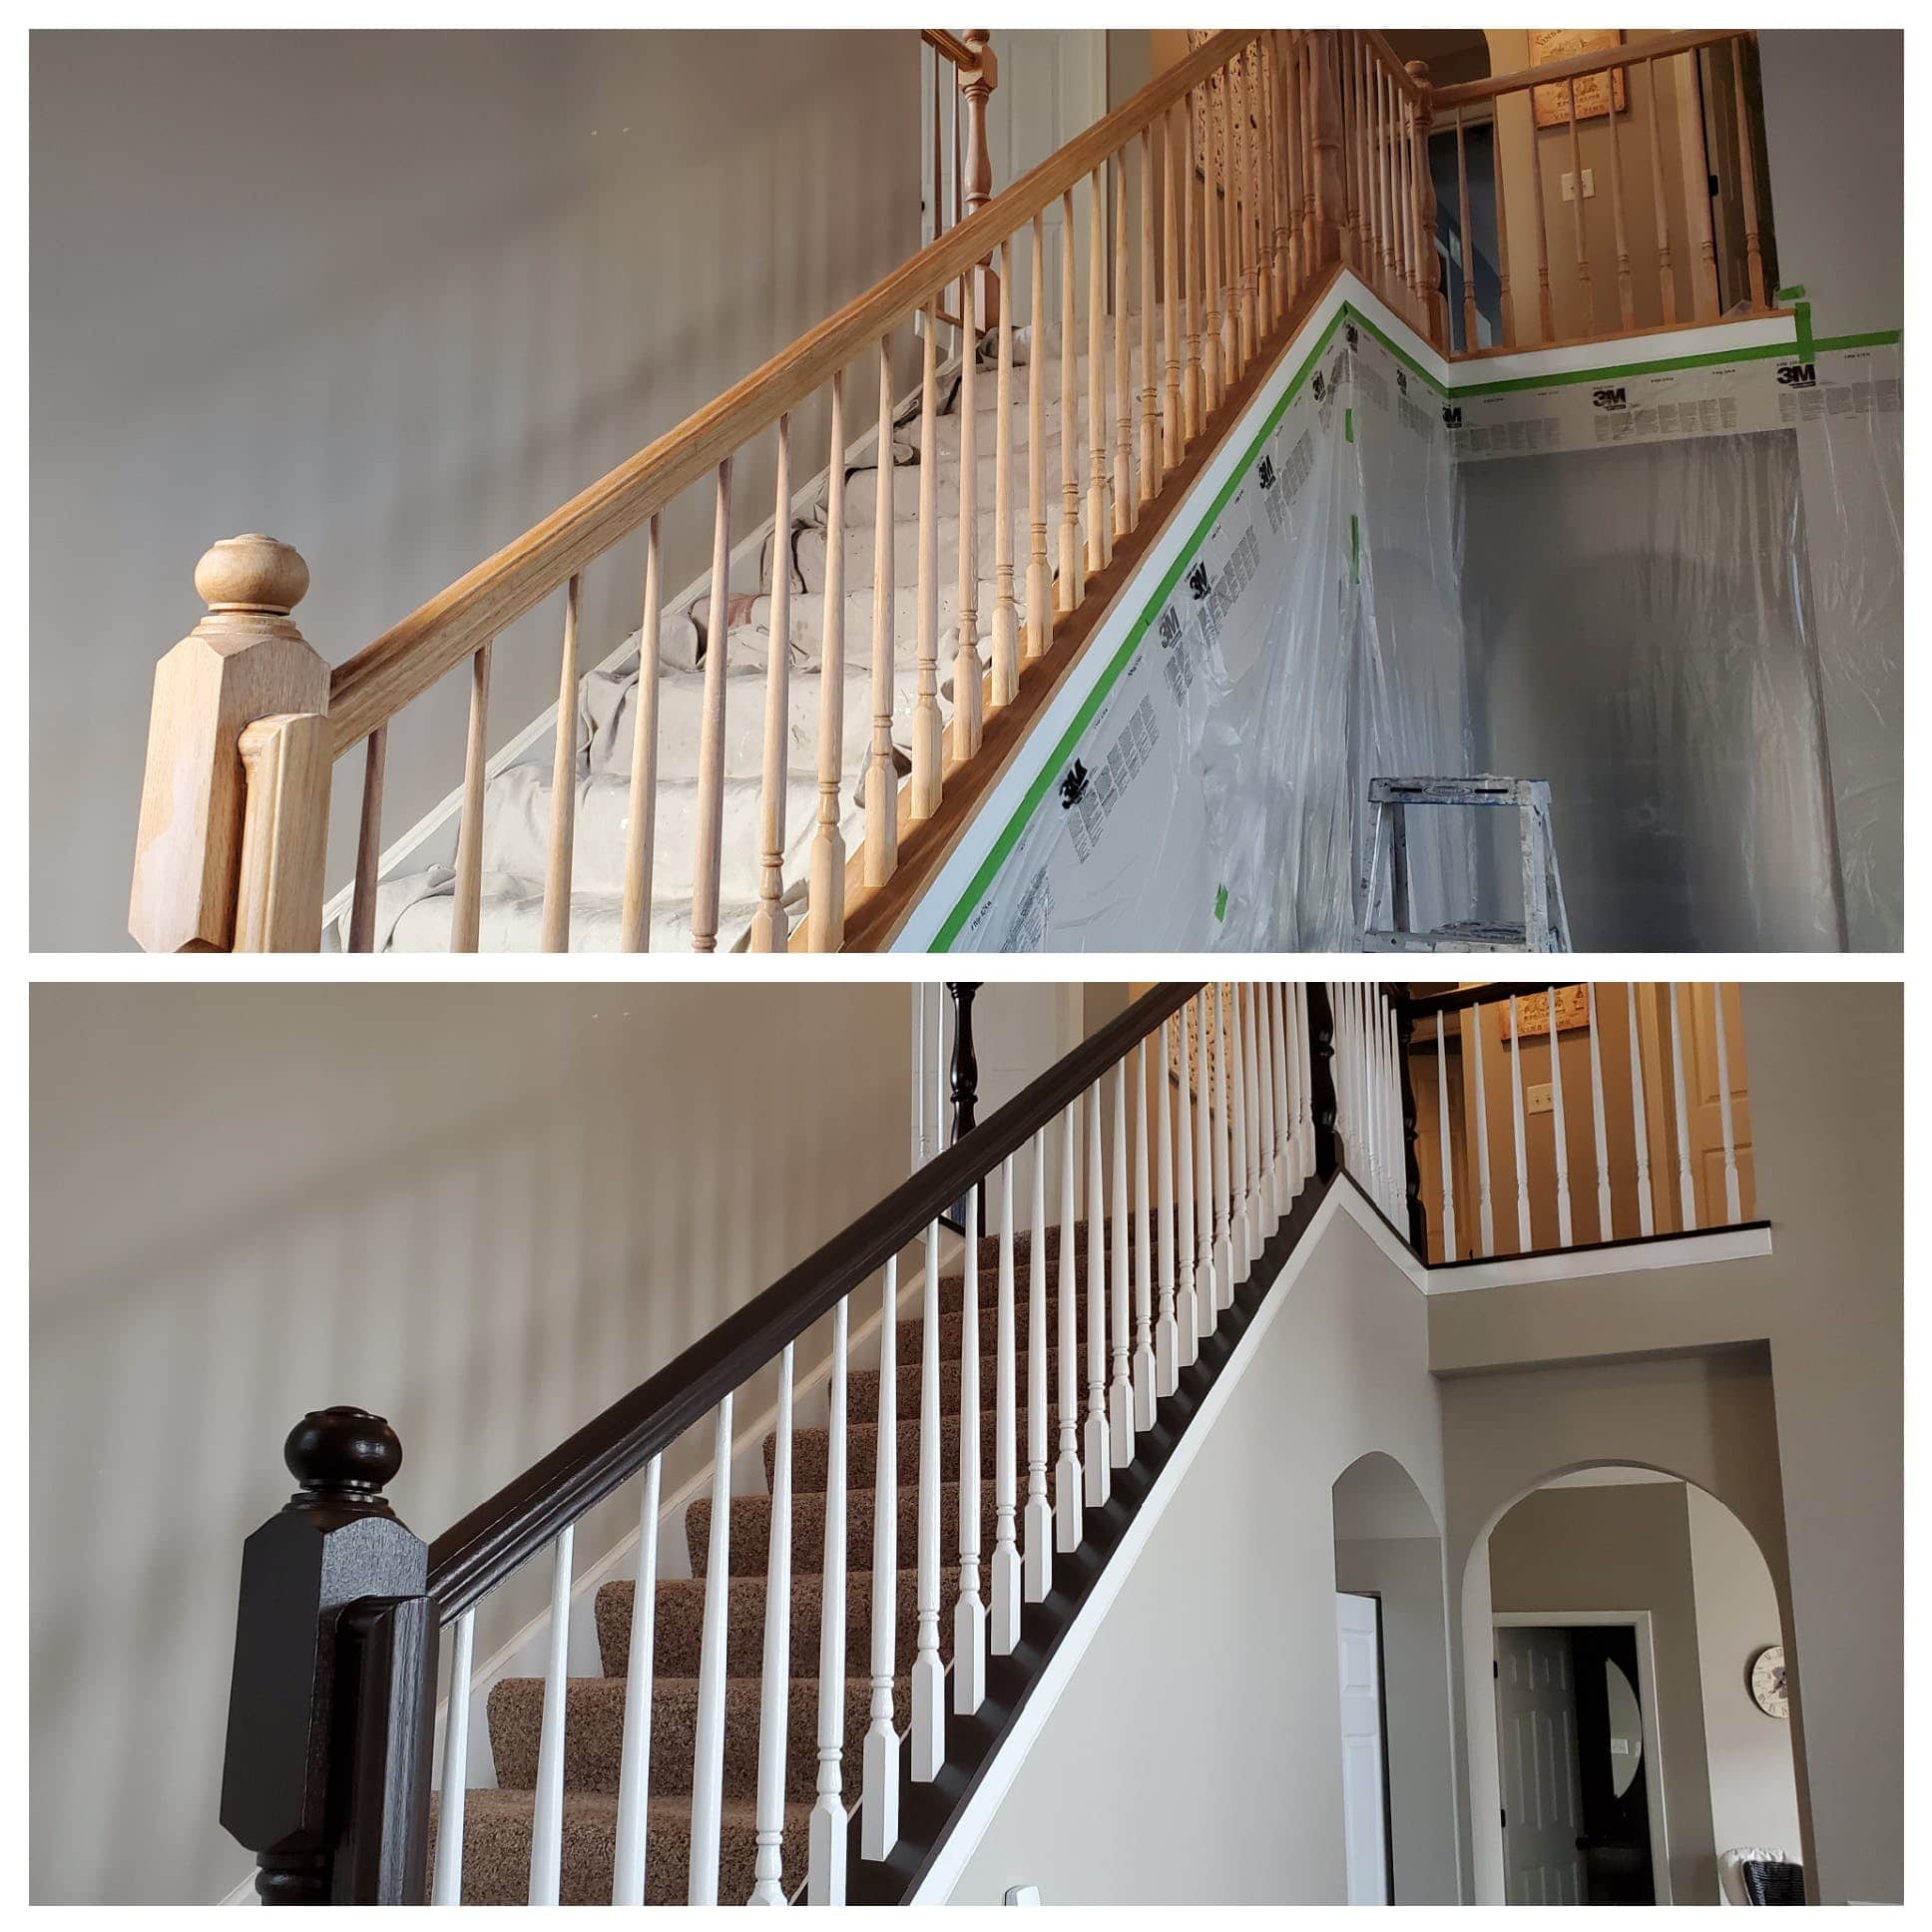 Merdiven Korkulukları Nasıl Boyanır? Merdivenleri ve korkulukları boyamak , bir evin görünümünü ve hissini önemli ölçüde değiştirir? Boyacı